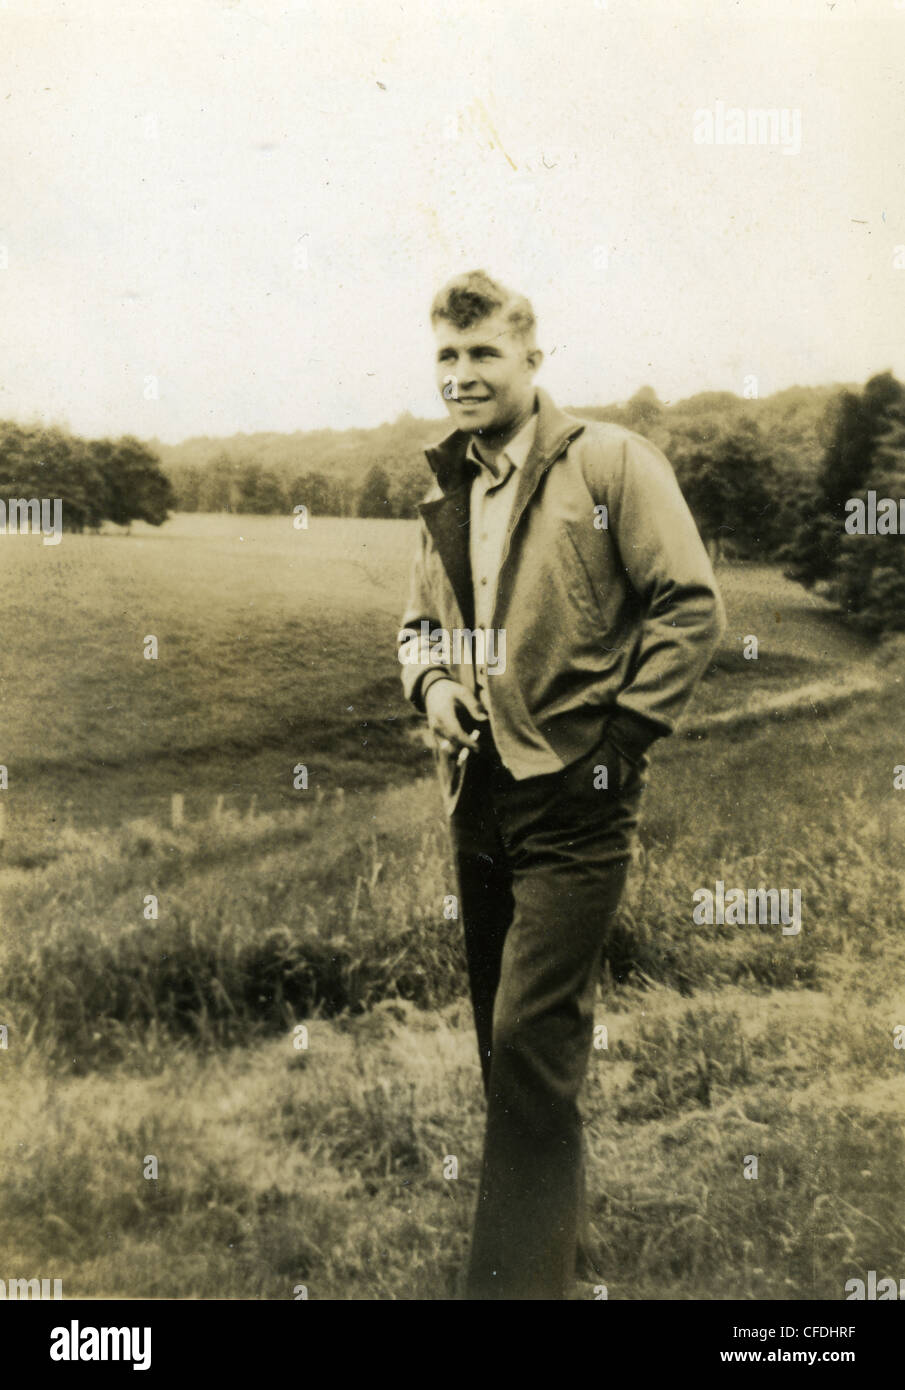 Jeune homme à la mode pendant la DEUXIÈME GUERRE MONDIALE 1940 plus grande génération fumeur fumeur scène rural farm Banque D'Images